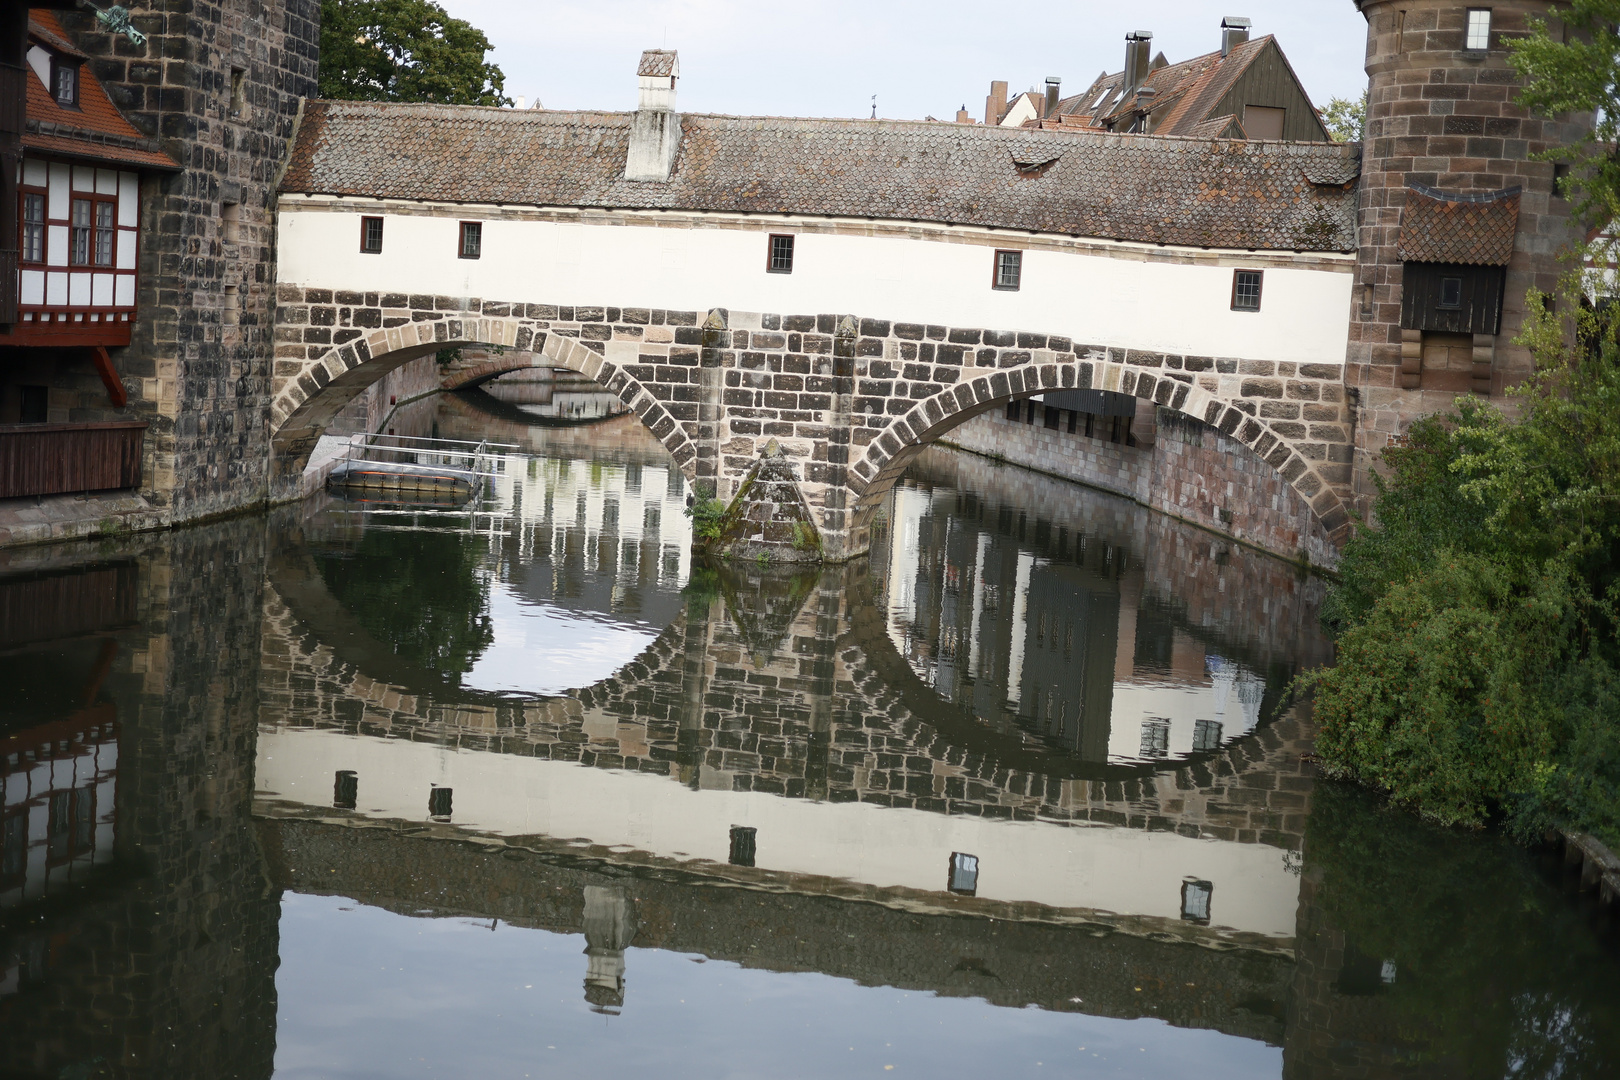 Nürnberg: Spieglein- Spieglein - an der Wand - wo gibts die schönsten Brücken im Land?